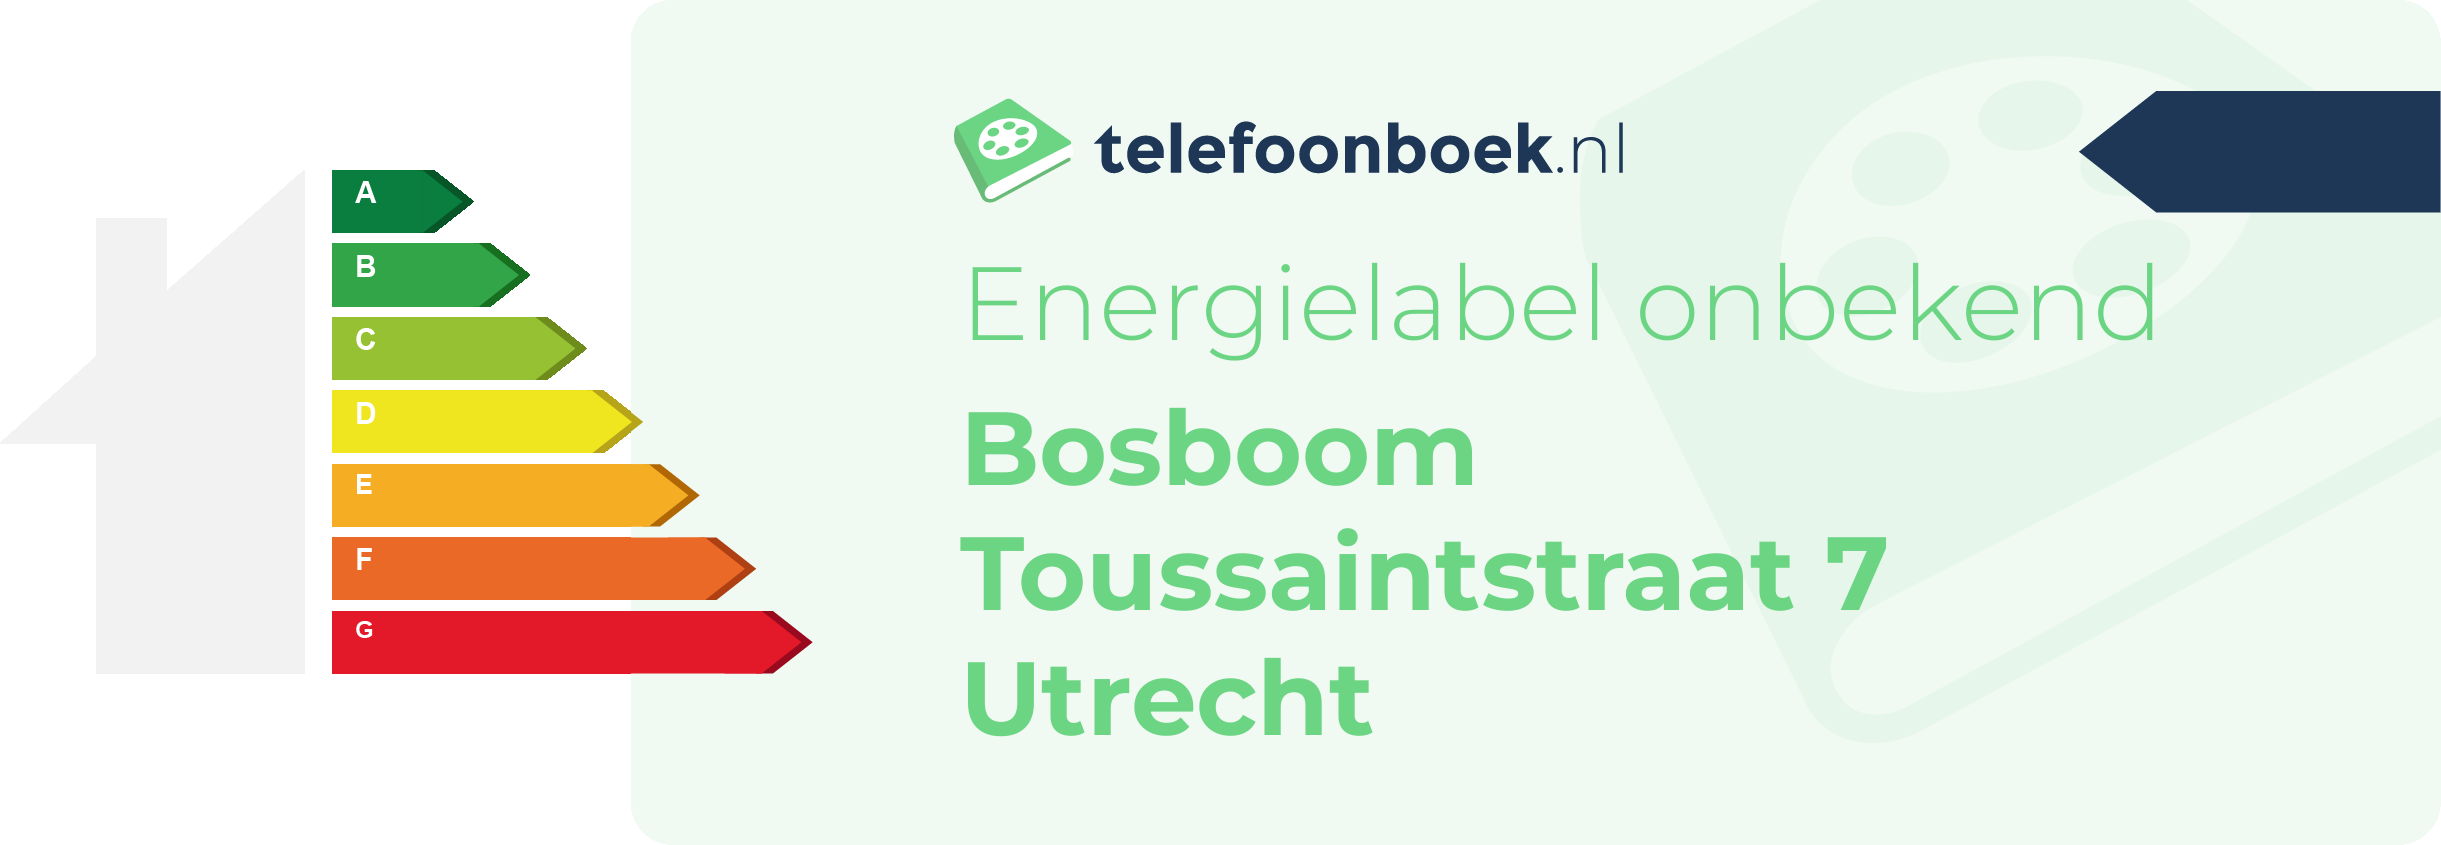 Energielabel Bosboom Toussaintstraat 7 Utrecht